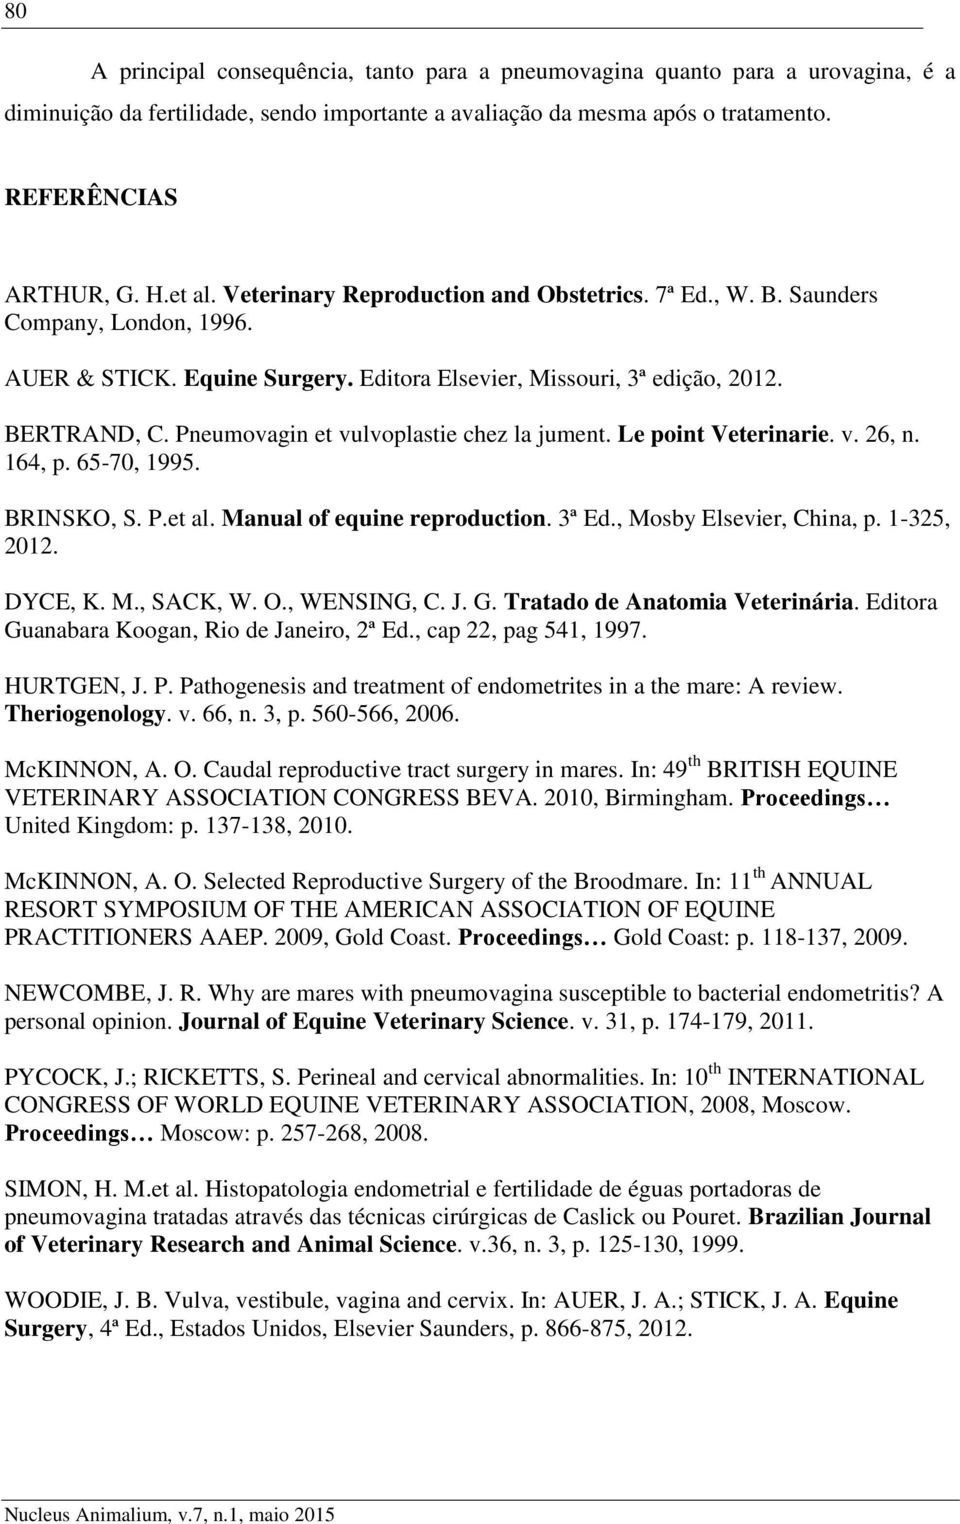 Pneumovagin et vulvoplastie chez la jument. Le point Veterinarie. v. 26, n. 164, p. 65-70, 1995. BRINSKO, S. P.et al. Manual of equine reproduction. 3ª Ed., Mosby Elsevier, China, p. 1-325, 2012.